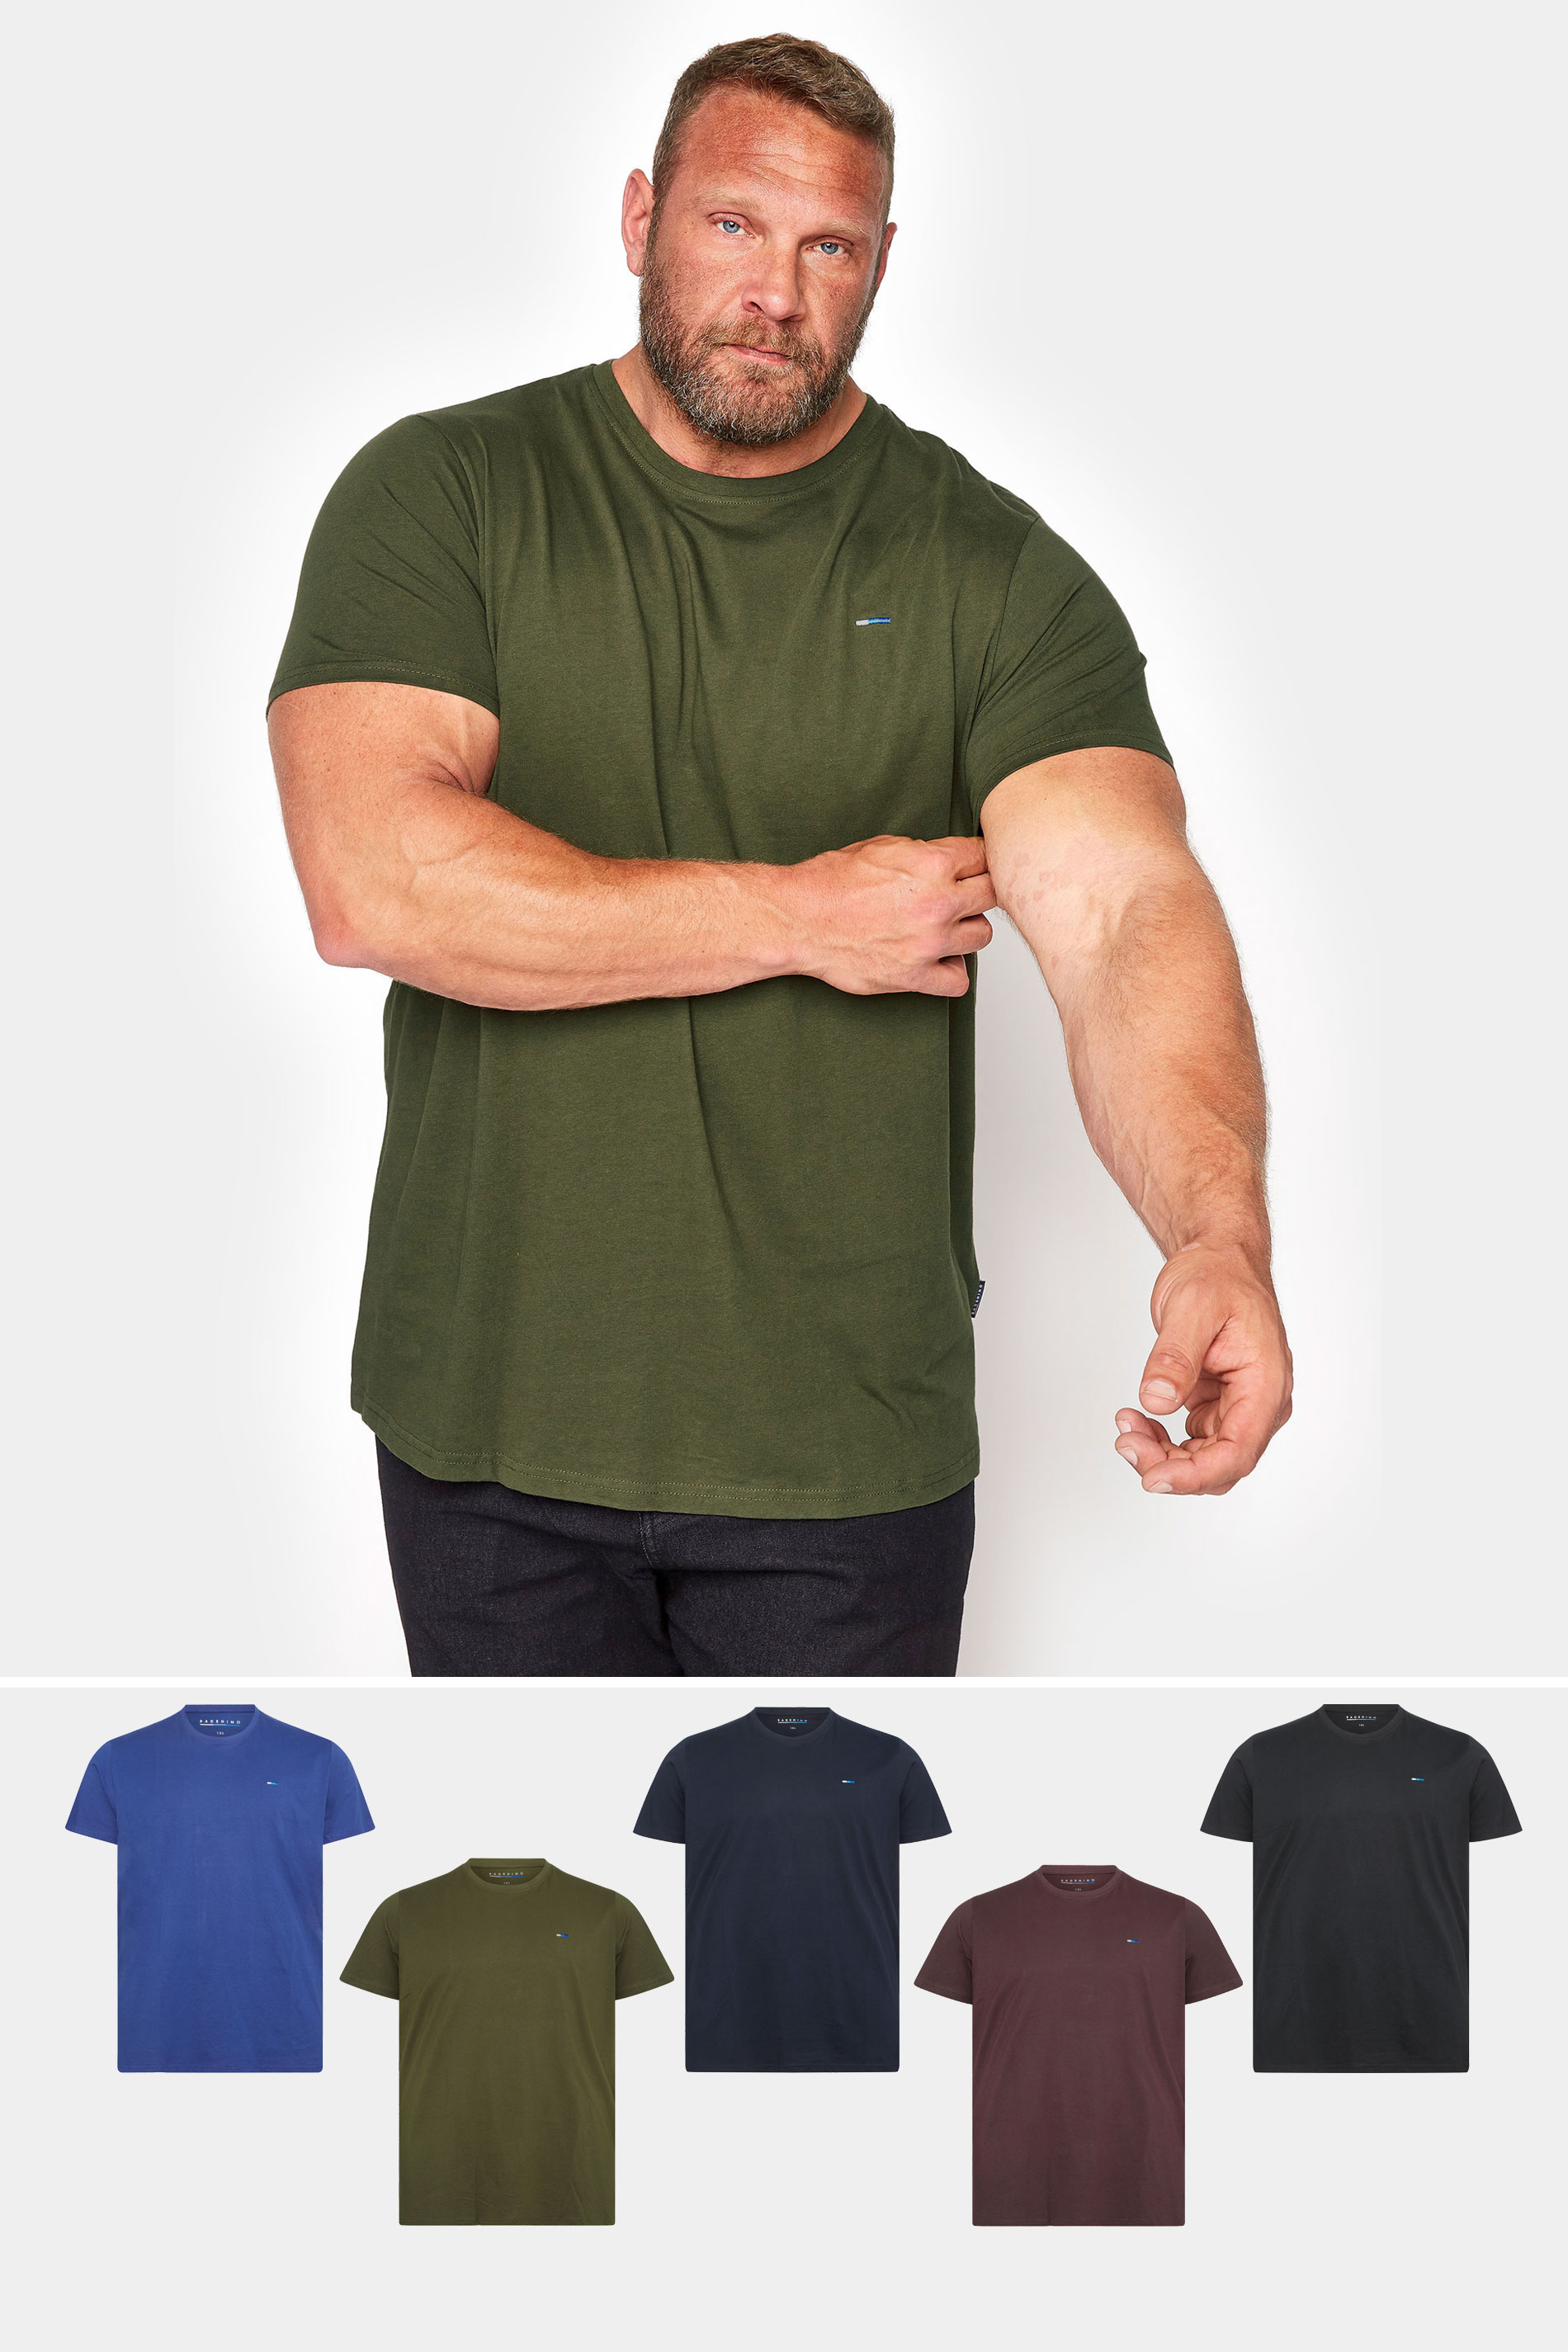 BadRhino 5 Pack Cotton T-Shirts | BadRhino 1